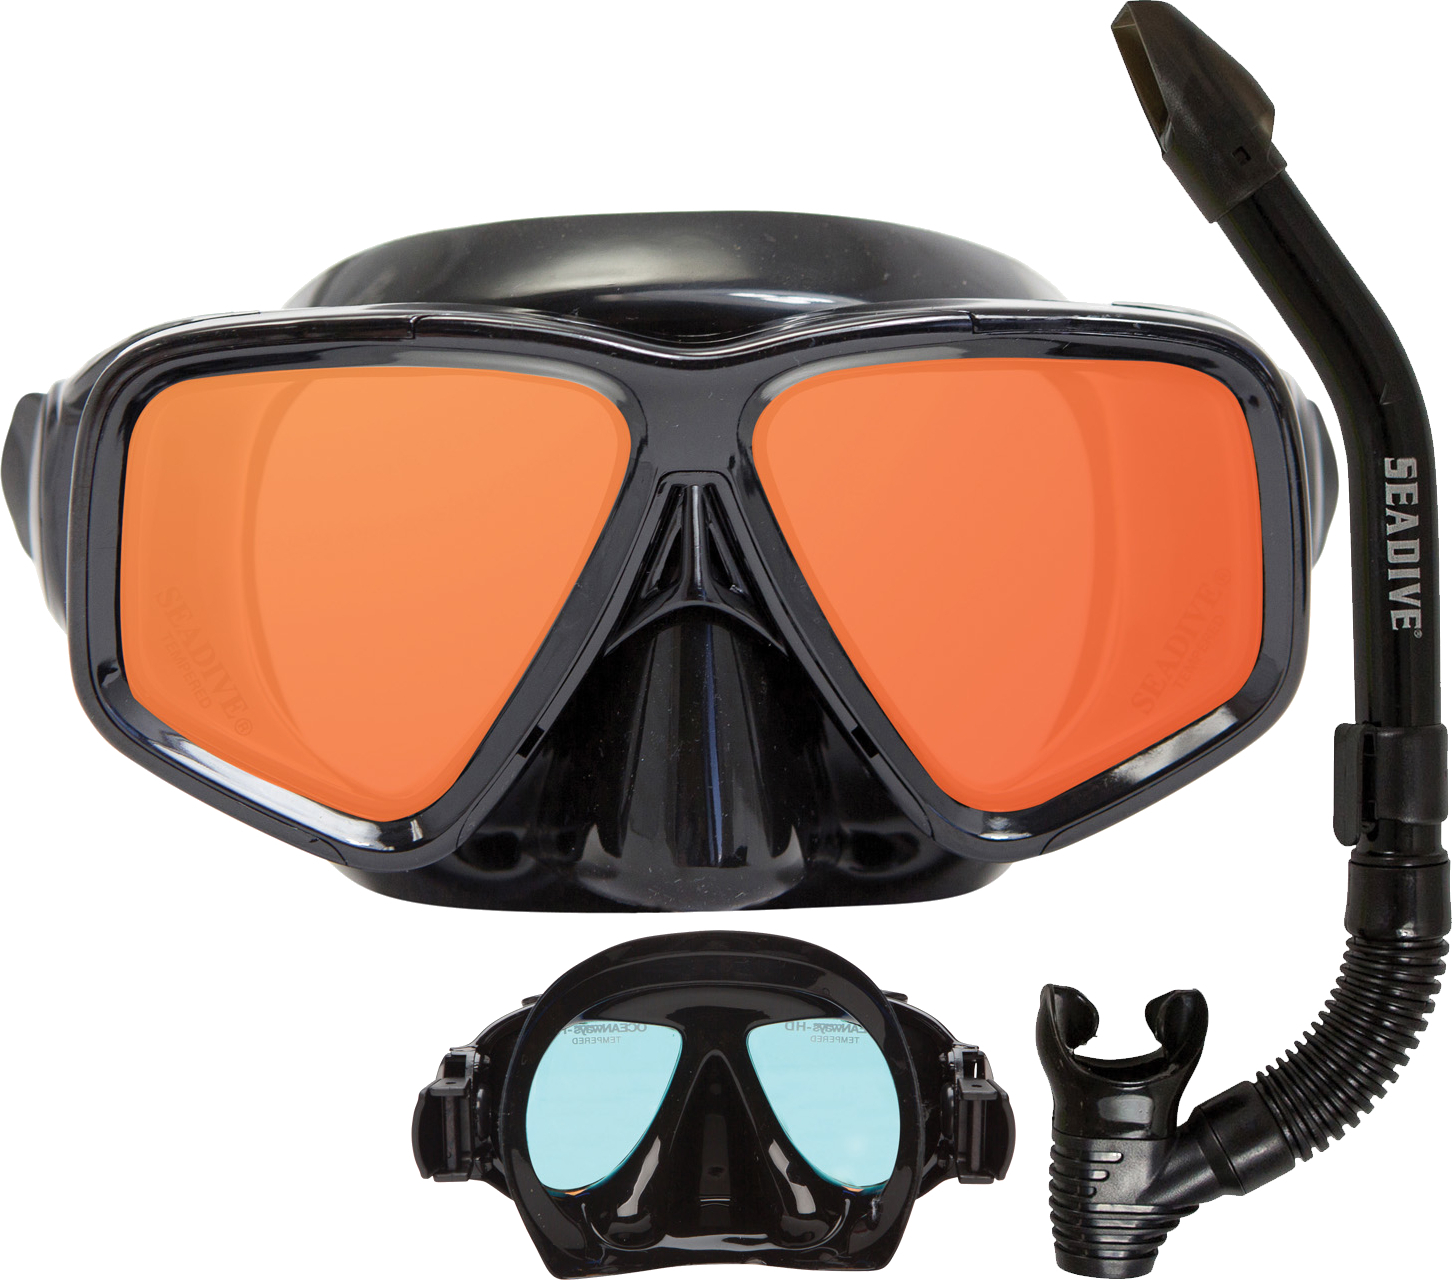 Oceanways SeeSharp Mask and Snorkel Combo